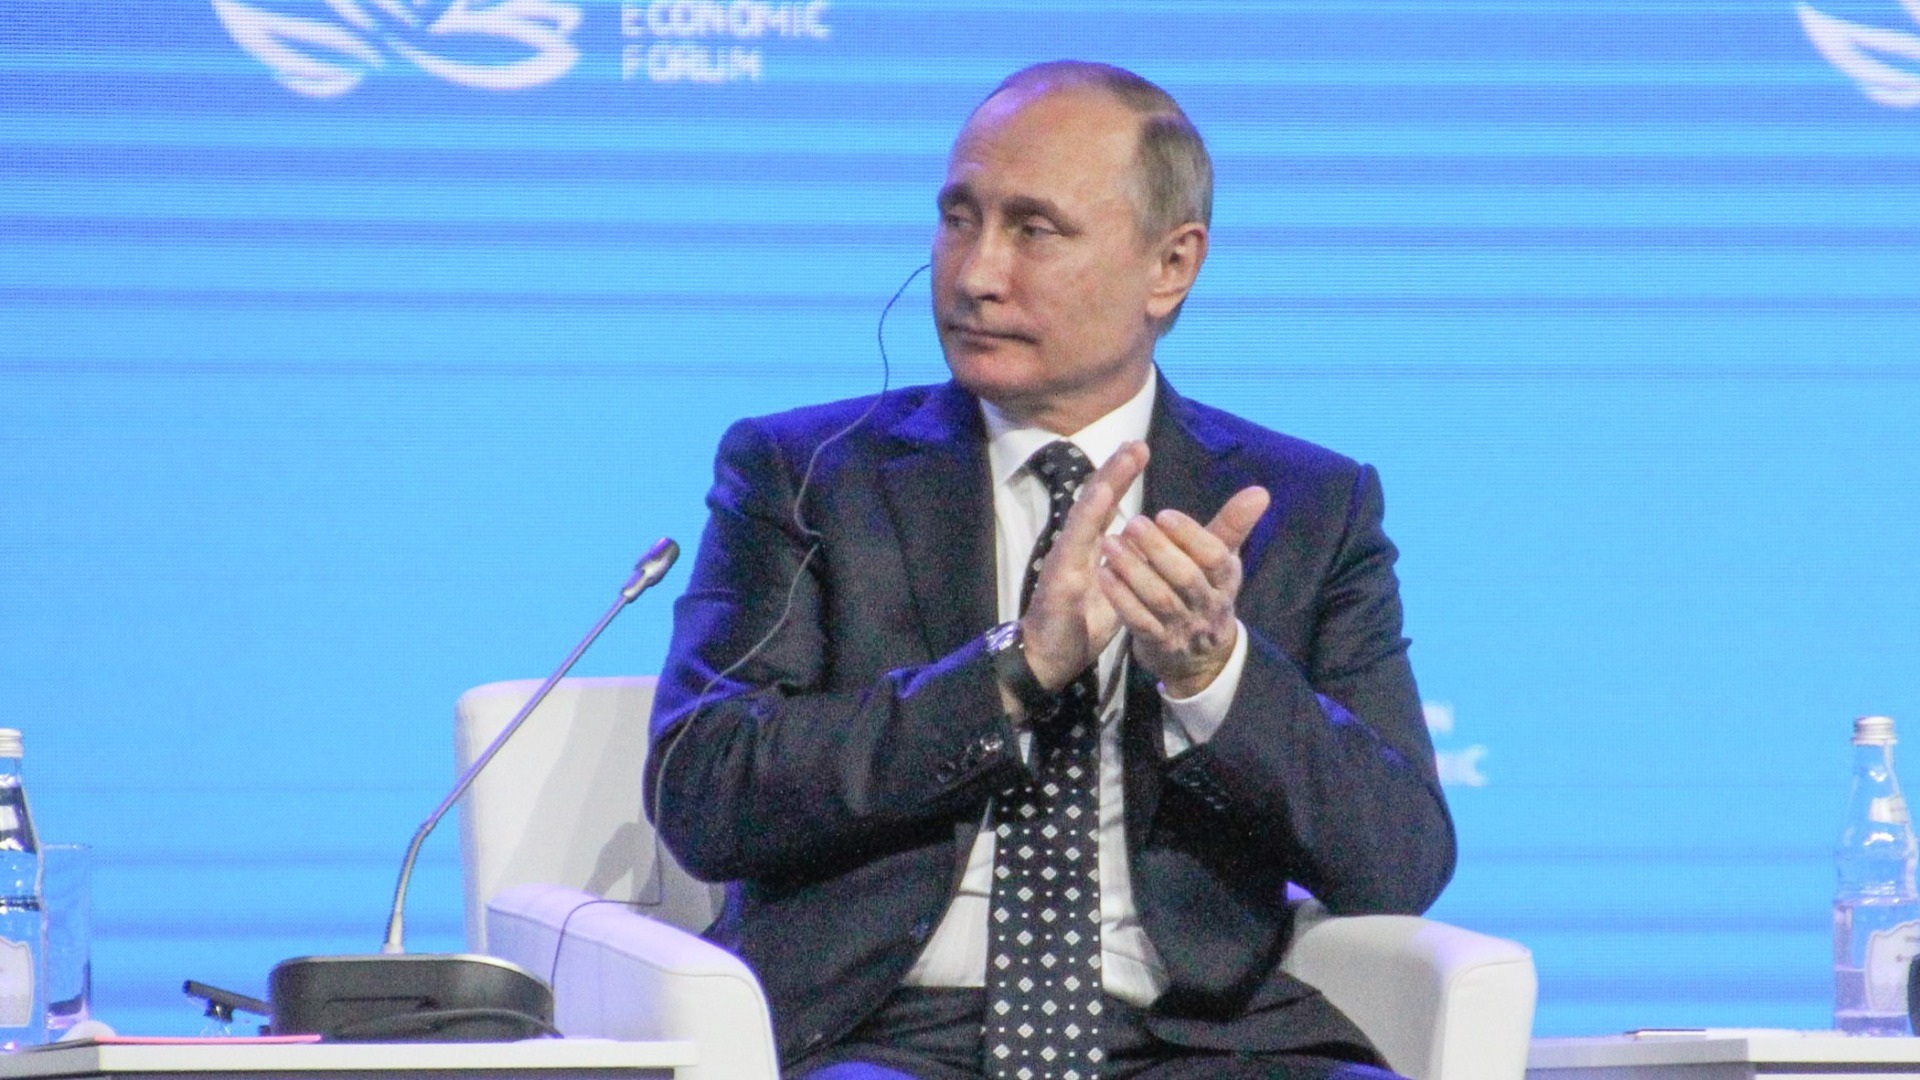 Группа избирателей поддержала самовыдвижение Путина на выборах президента РФ